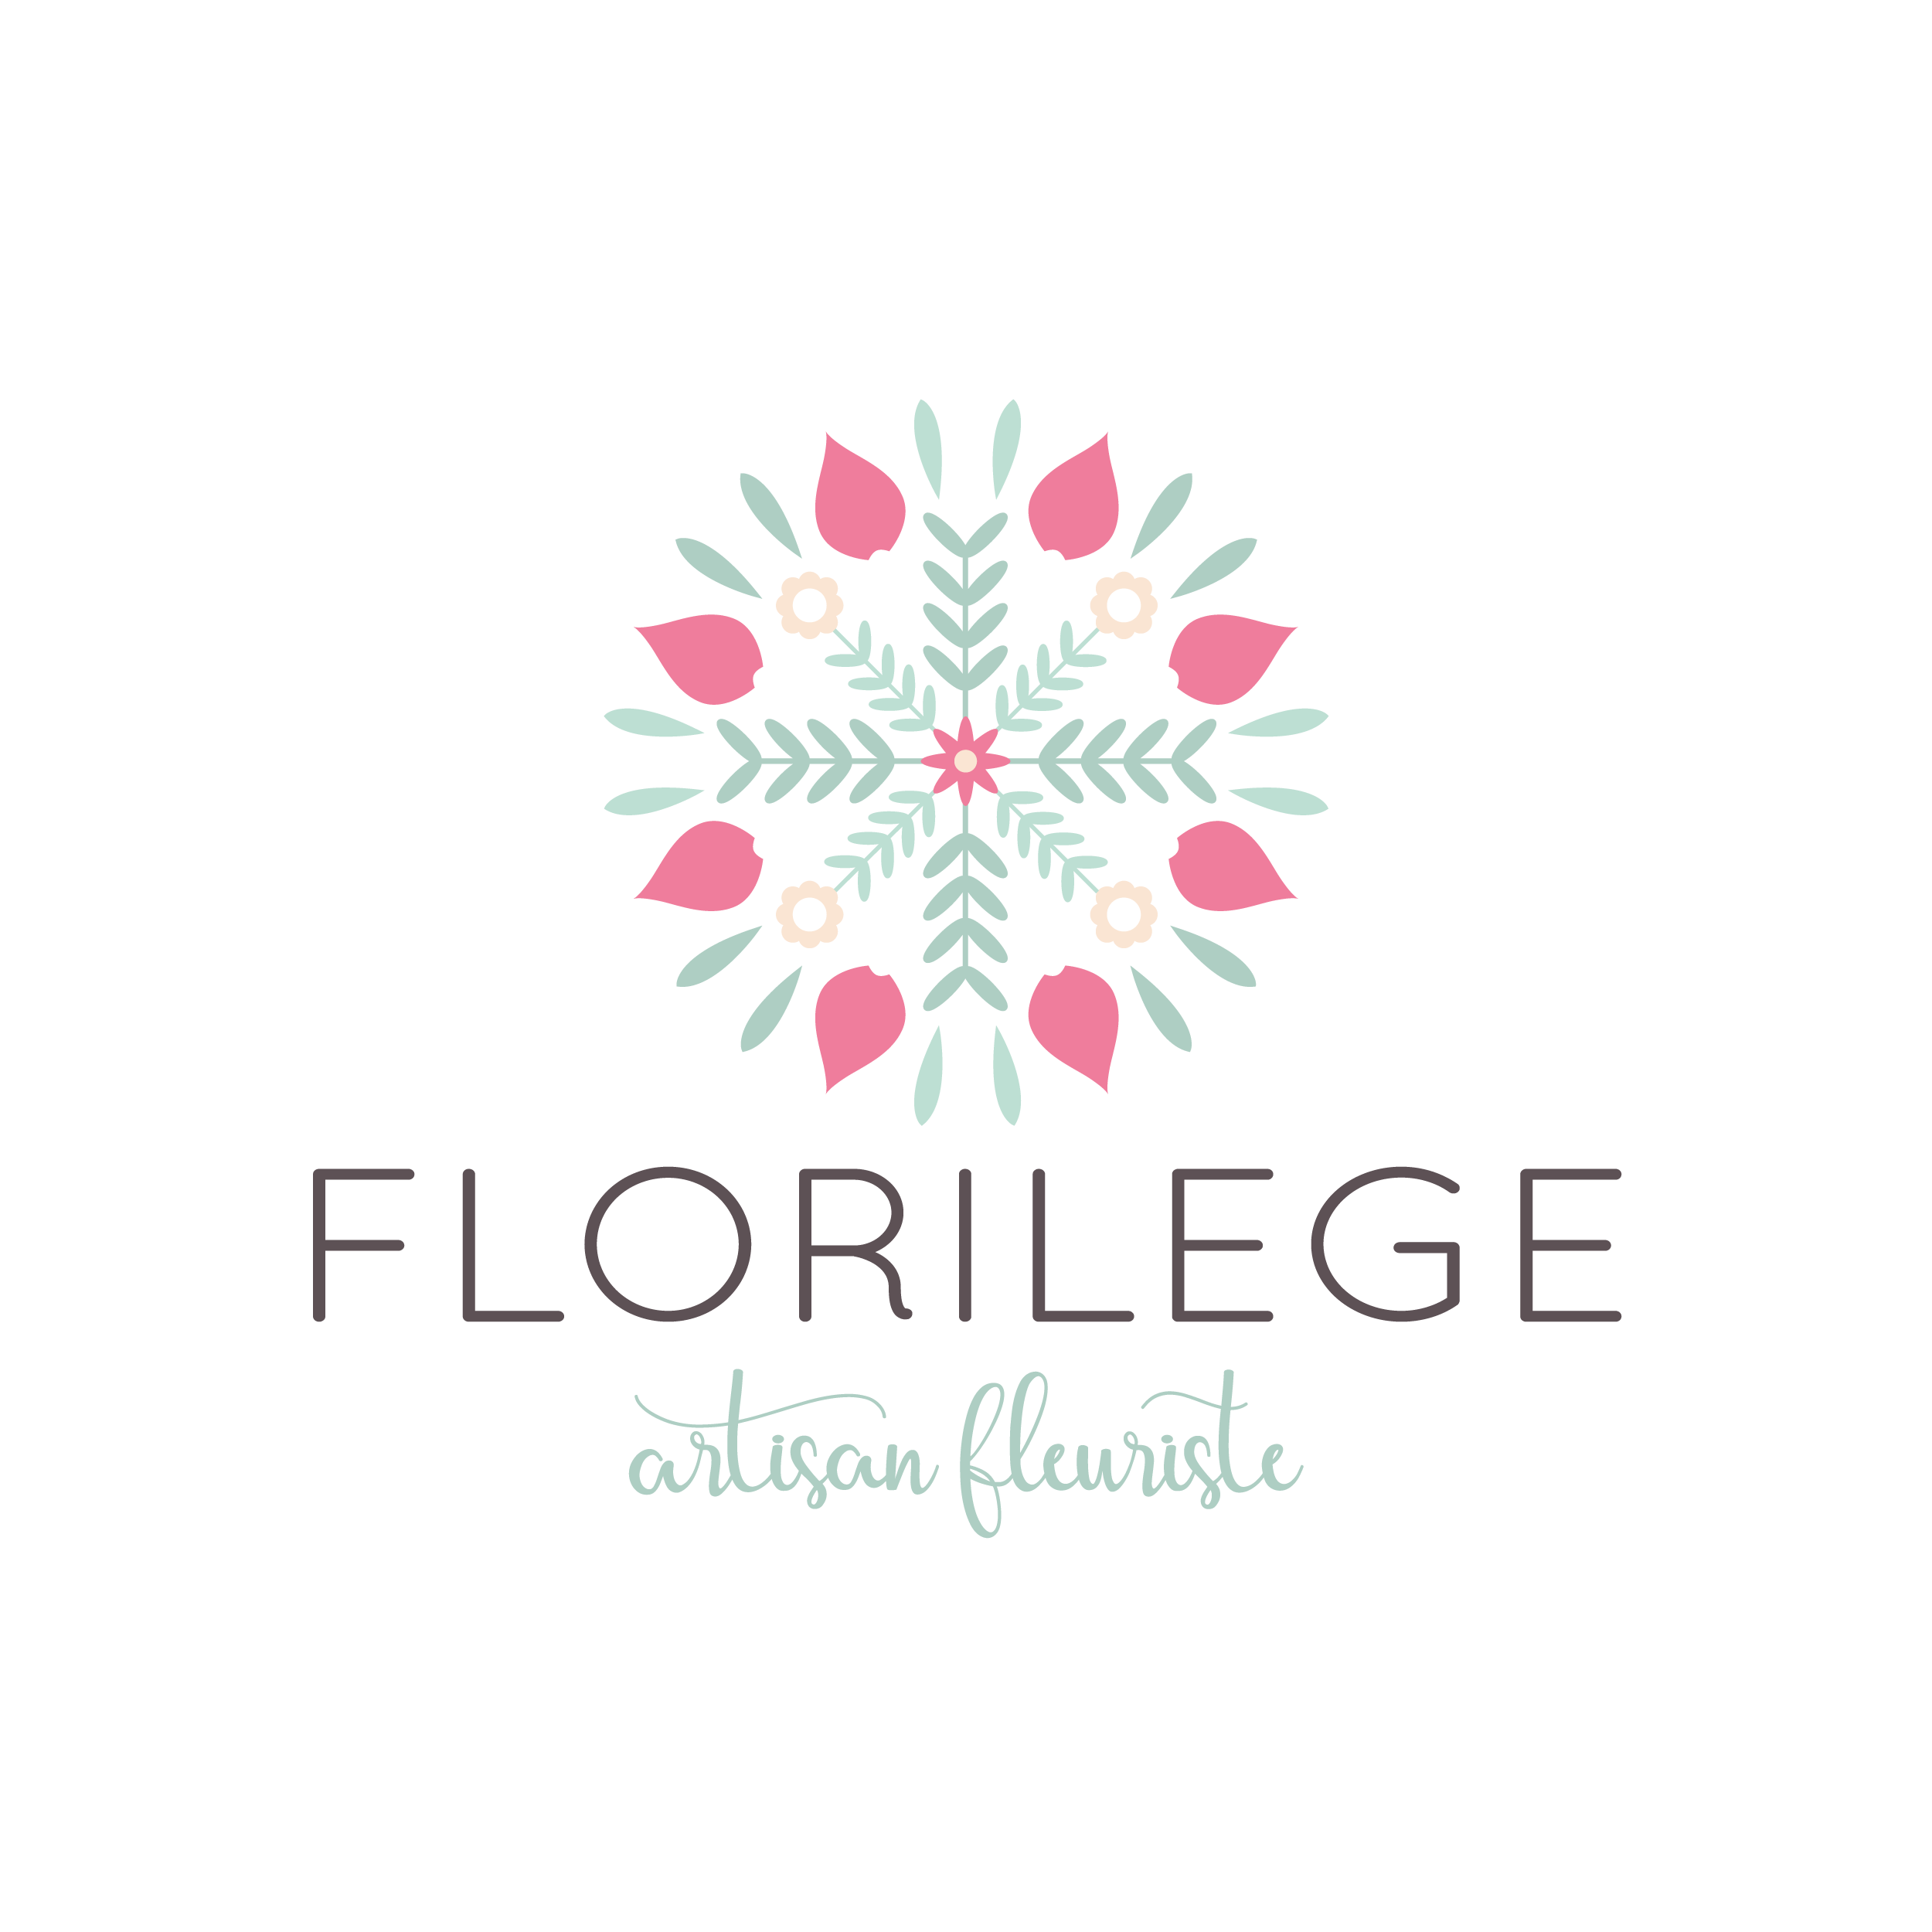 Florilege artisan fleuriste suisse